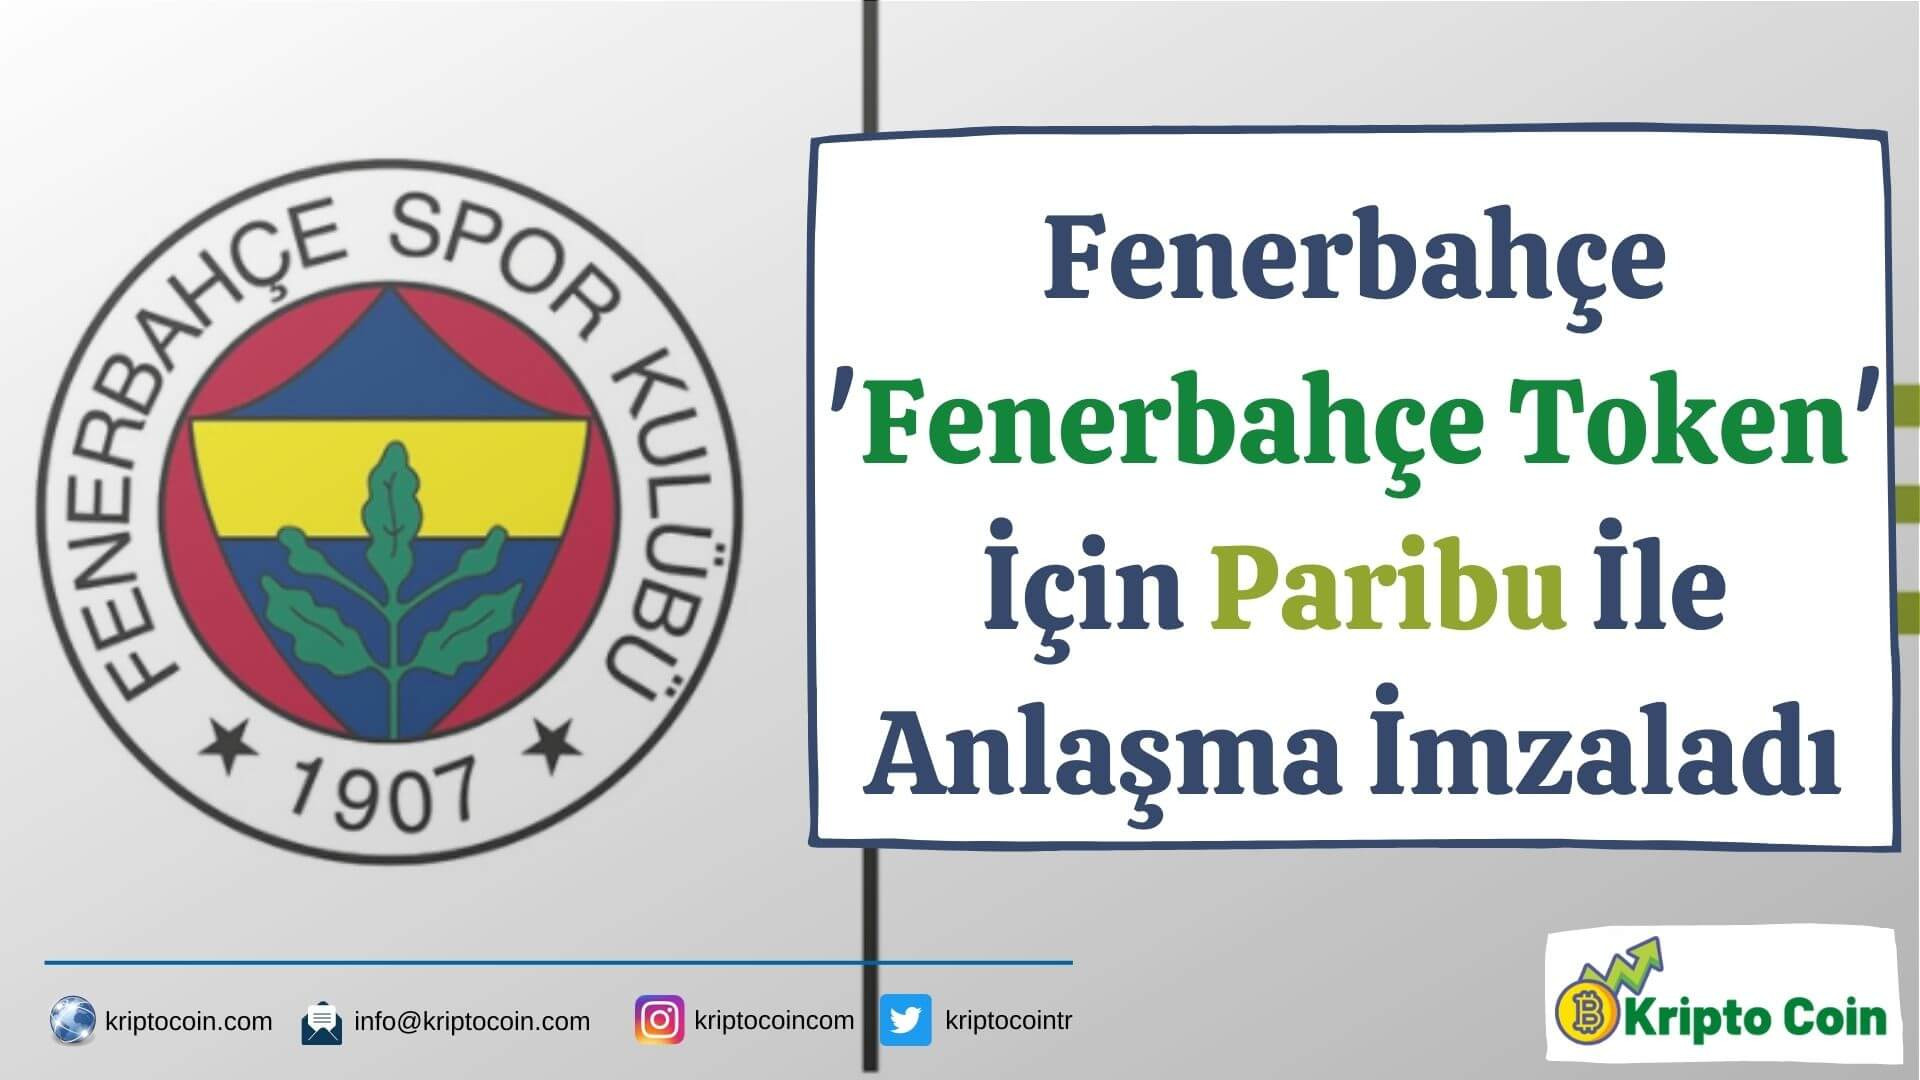 Fenerbahçe 'Fenerbahçe Token' İçin Paribu İle Anlaşma İmzaladı